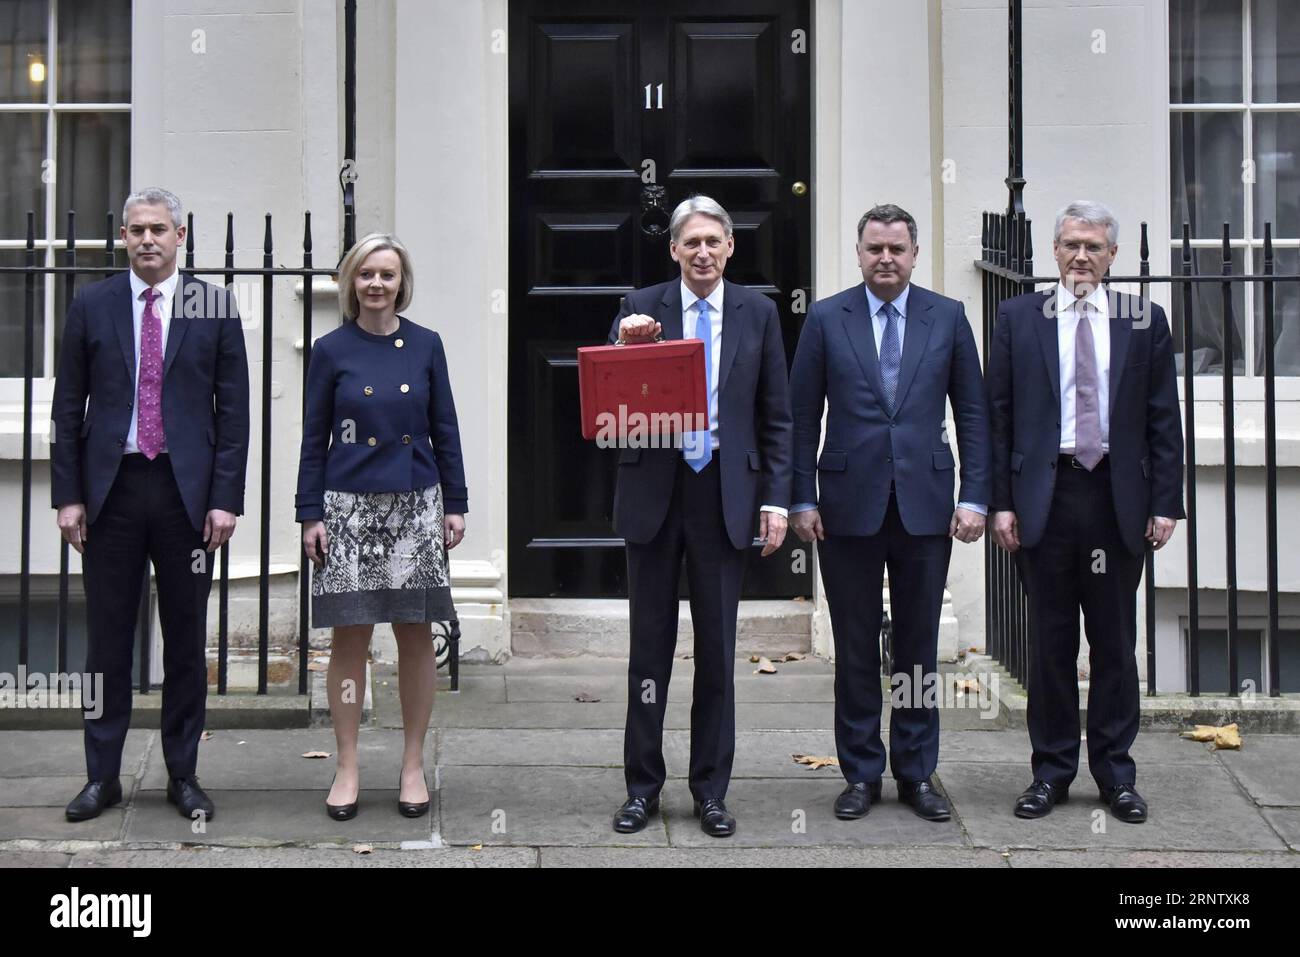 (171122) -- LONDRES, le 22 novembre 2017 -- le chancelier de l'Échiquier britannique Philip Hammond (C), accompagné de membres du personnel, pose pour des photos avant de quitter le 11 Downing Street pour remettre le budget au Parlement à Londres, en Grande-Bretagne, le 22 novembre 2017. Hammond a dévoilé mercredi le budget principal pour l'année à venir dans un contexte d'incertitude liée au Brexit et de croissance économique modérée. BRITAIN-LONDON-EXCHEQUER-CHANCELLOR-BUDGET-DÉVOILEMENT STEPHENXCHUNG PUBLICATIONXNOTXINXCHN Banque D'Images